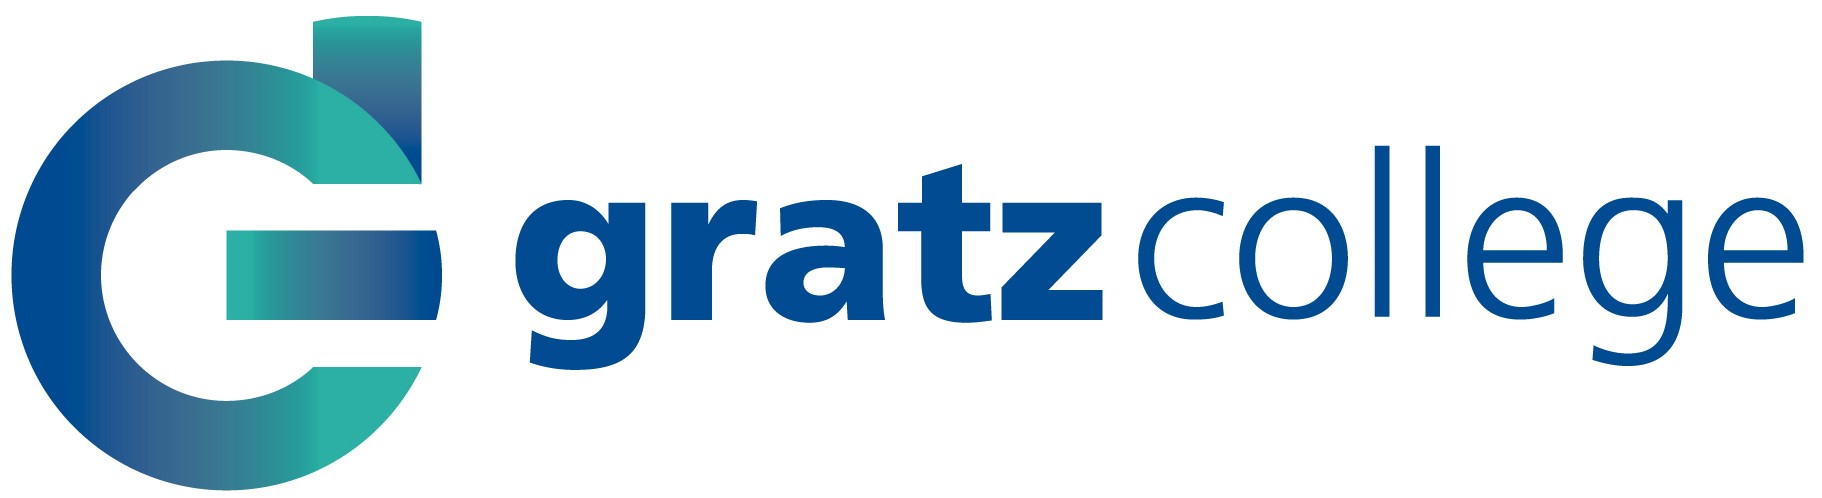 Gratz College  - logo